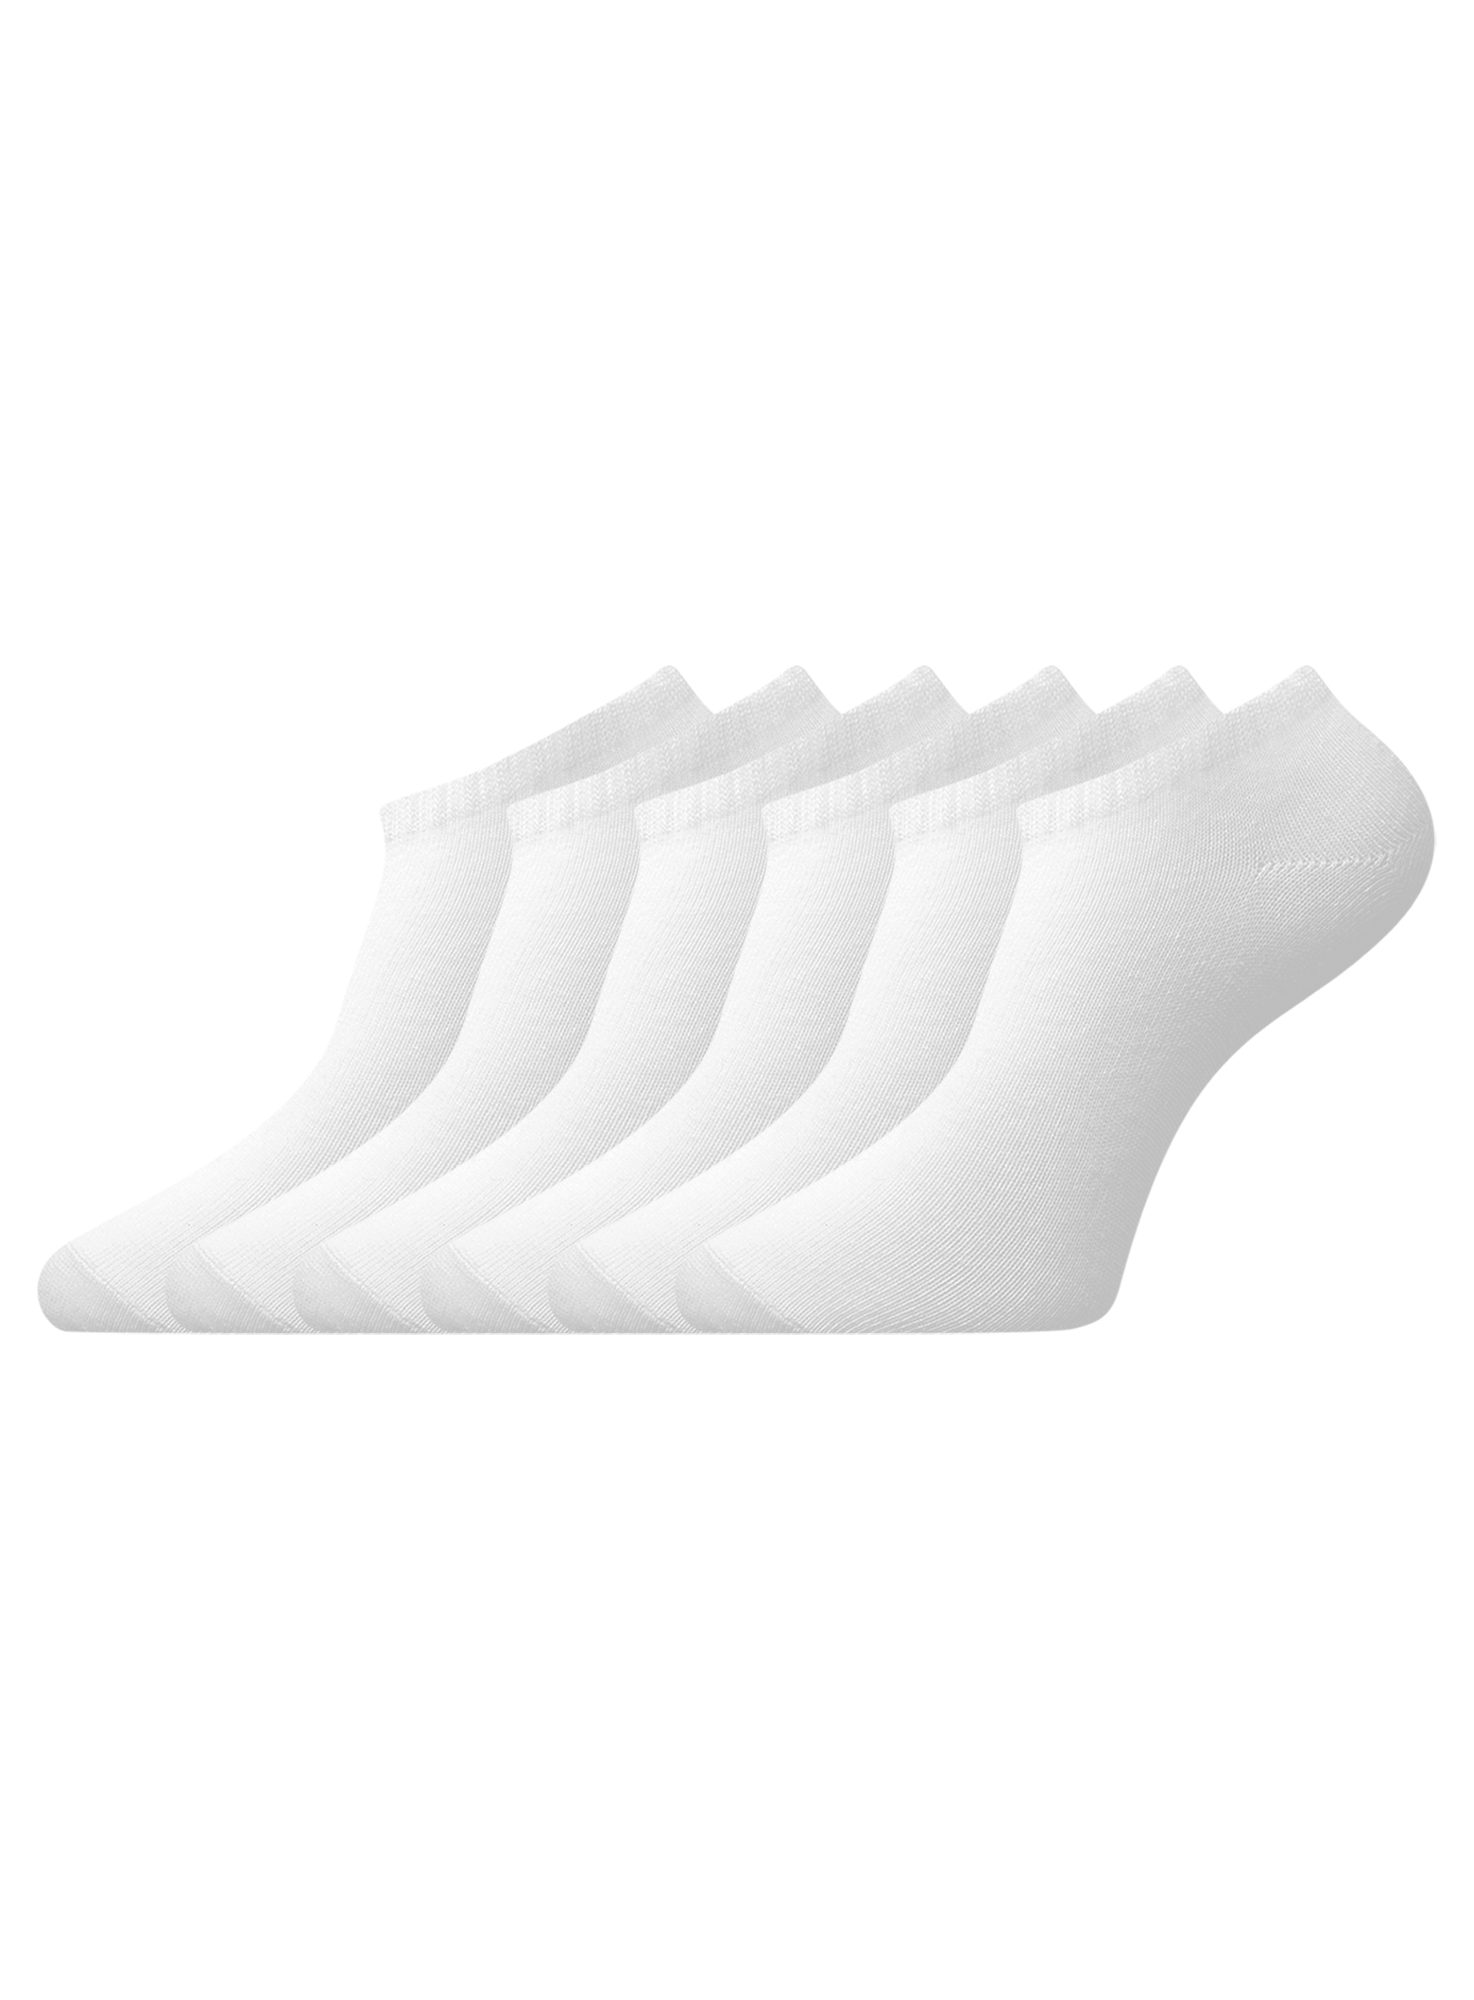 Комплект носков женских oodji 57102433T6 белых 35-37